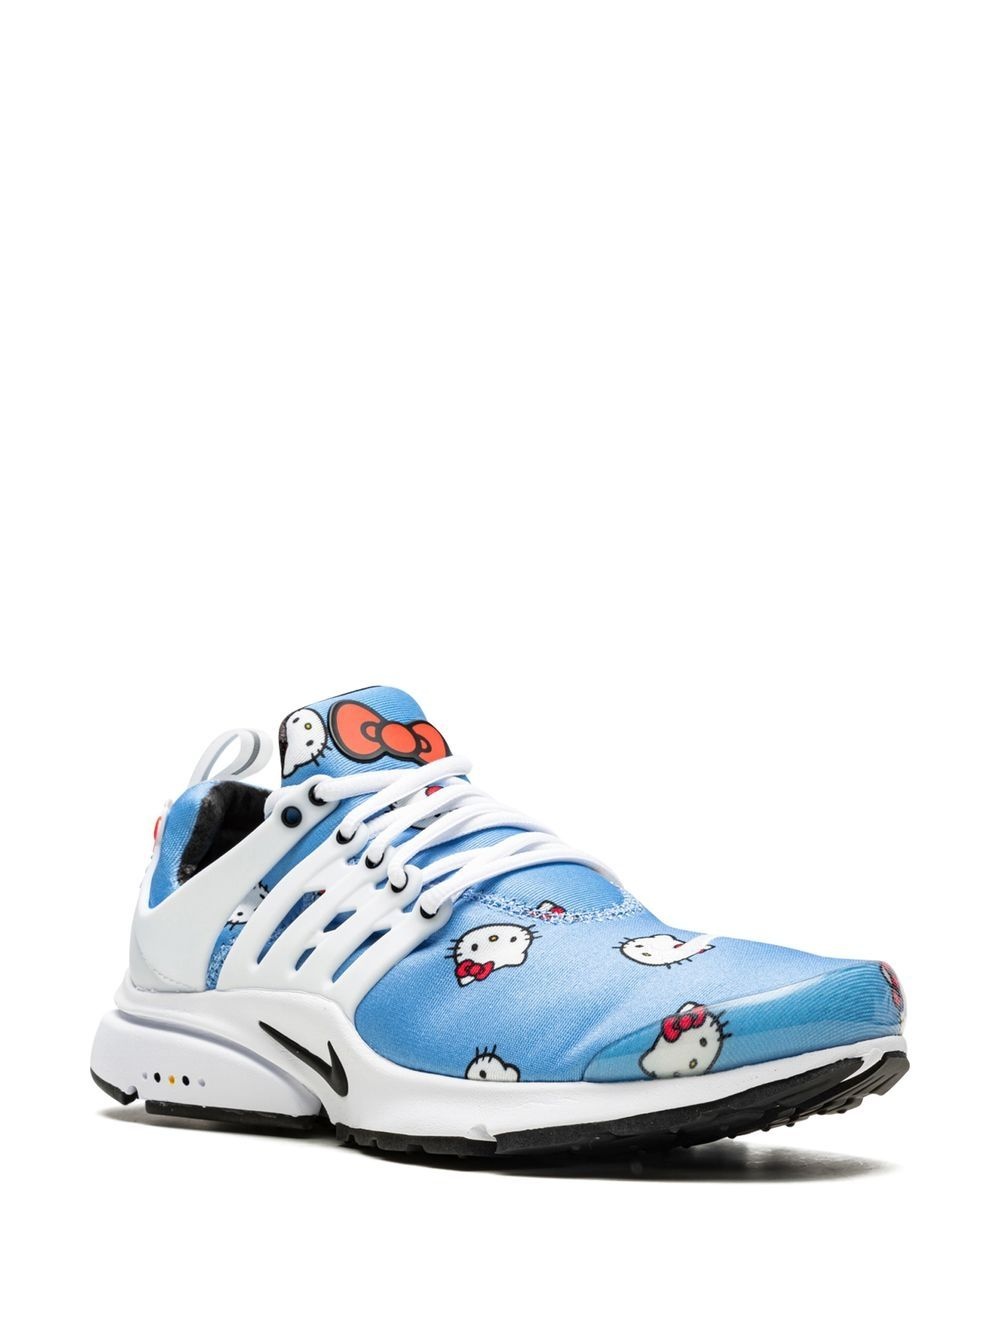 Air Presto "Hello Kitty" sneakers - 2